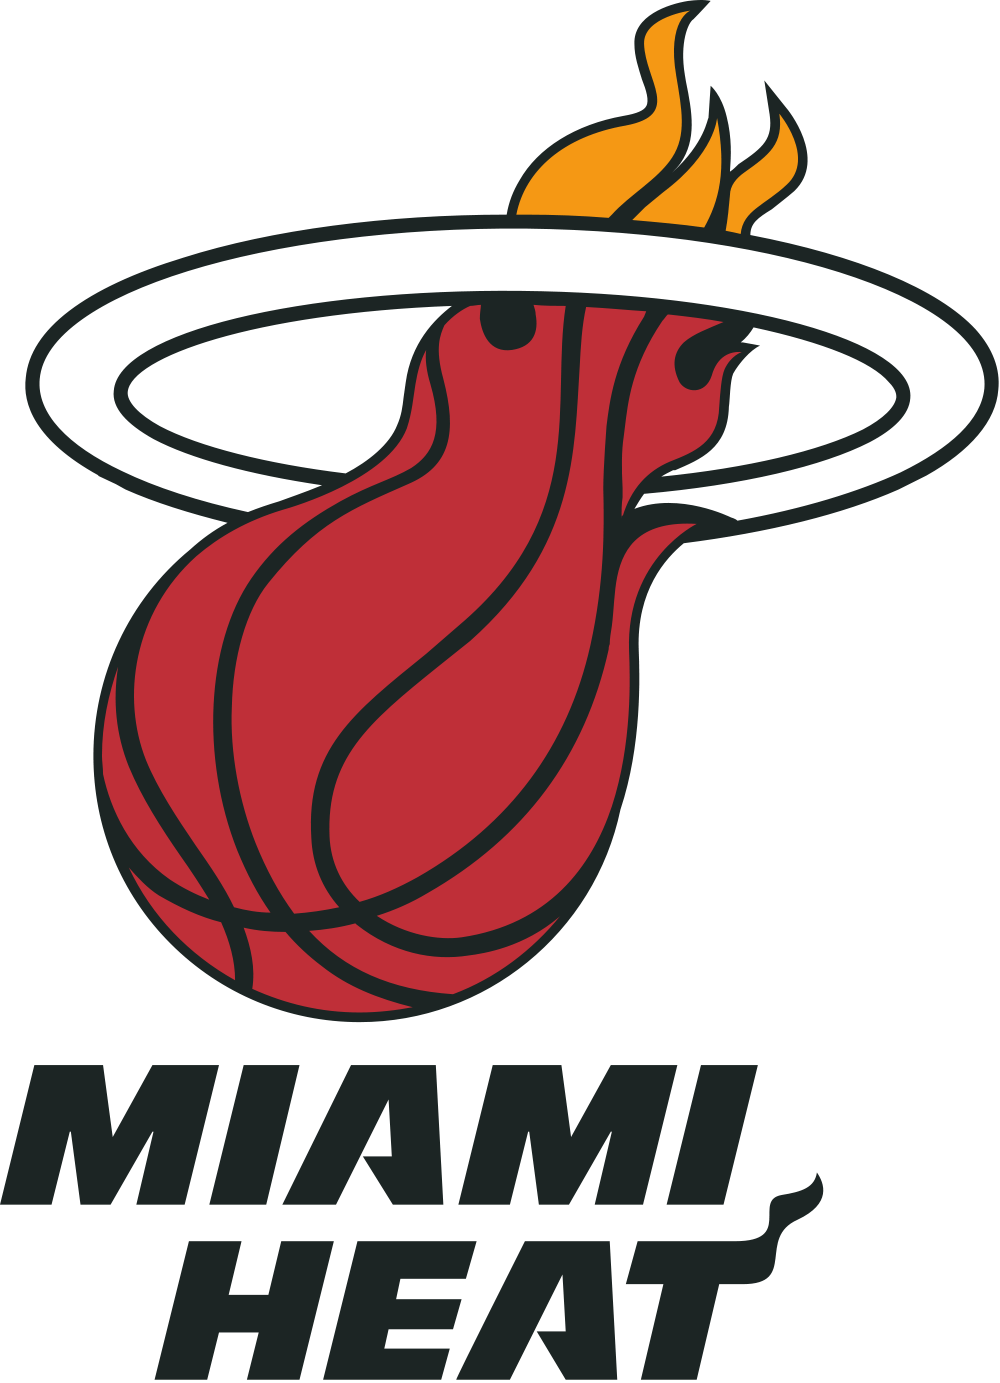 nba. NBA Miami Heat Logo Wallpaper. LogoWallpaper.net. dakota